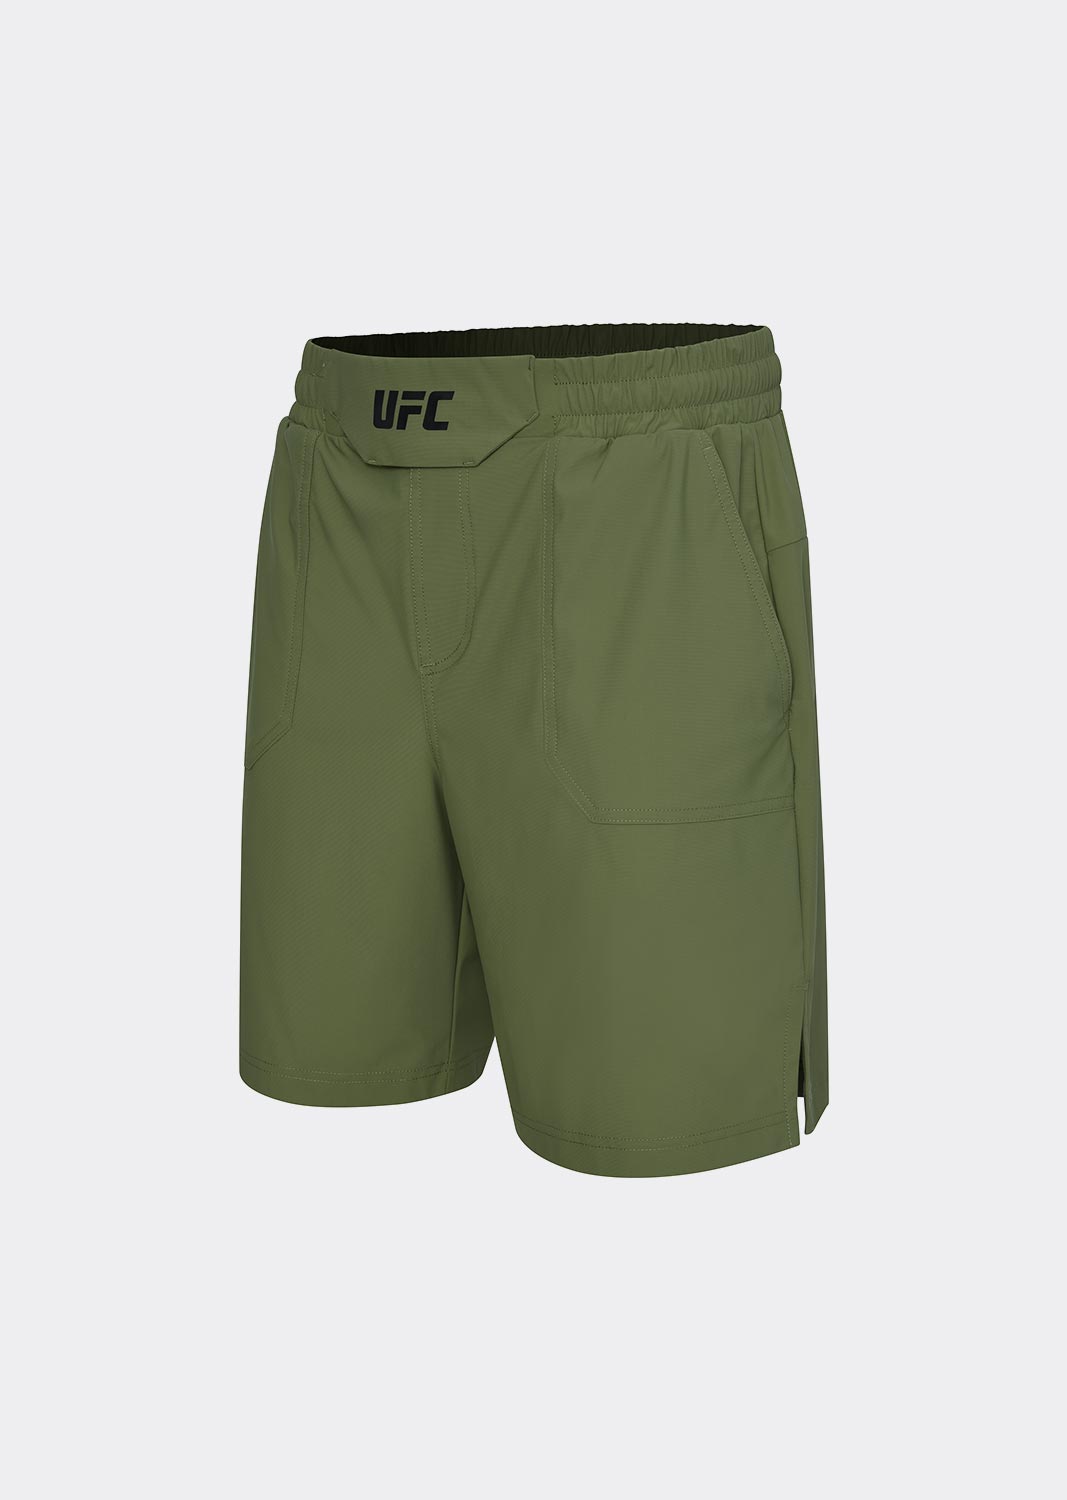 UFC 트리코트 레귤러핏 쇼츠 7인치 카키 U4SPV2110KH